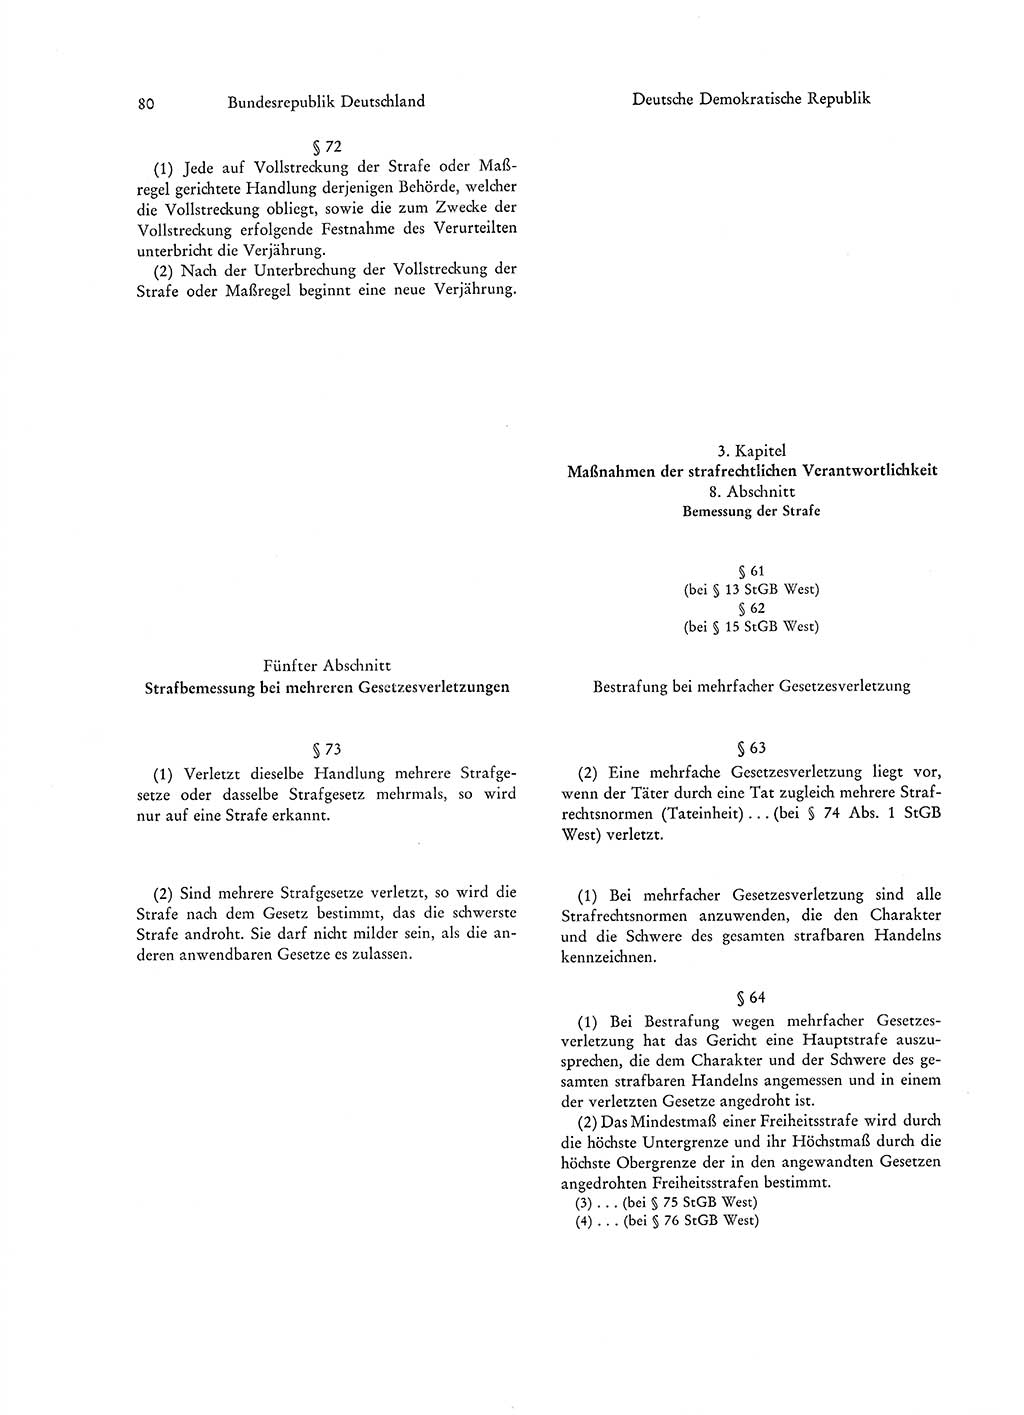 Strafgesetzgebung in Deutschland [Bundesrepublik Deutschland (BRD) und Deutsche Demokratische Republik (DDR)] 1972, Seite 80 (Str.-Ges. Dtl. StGB BRD DDR 1972, S. 80)